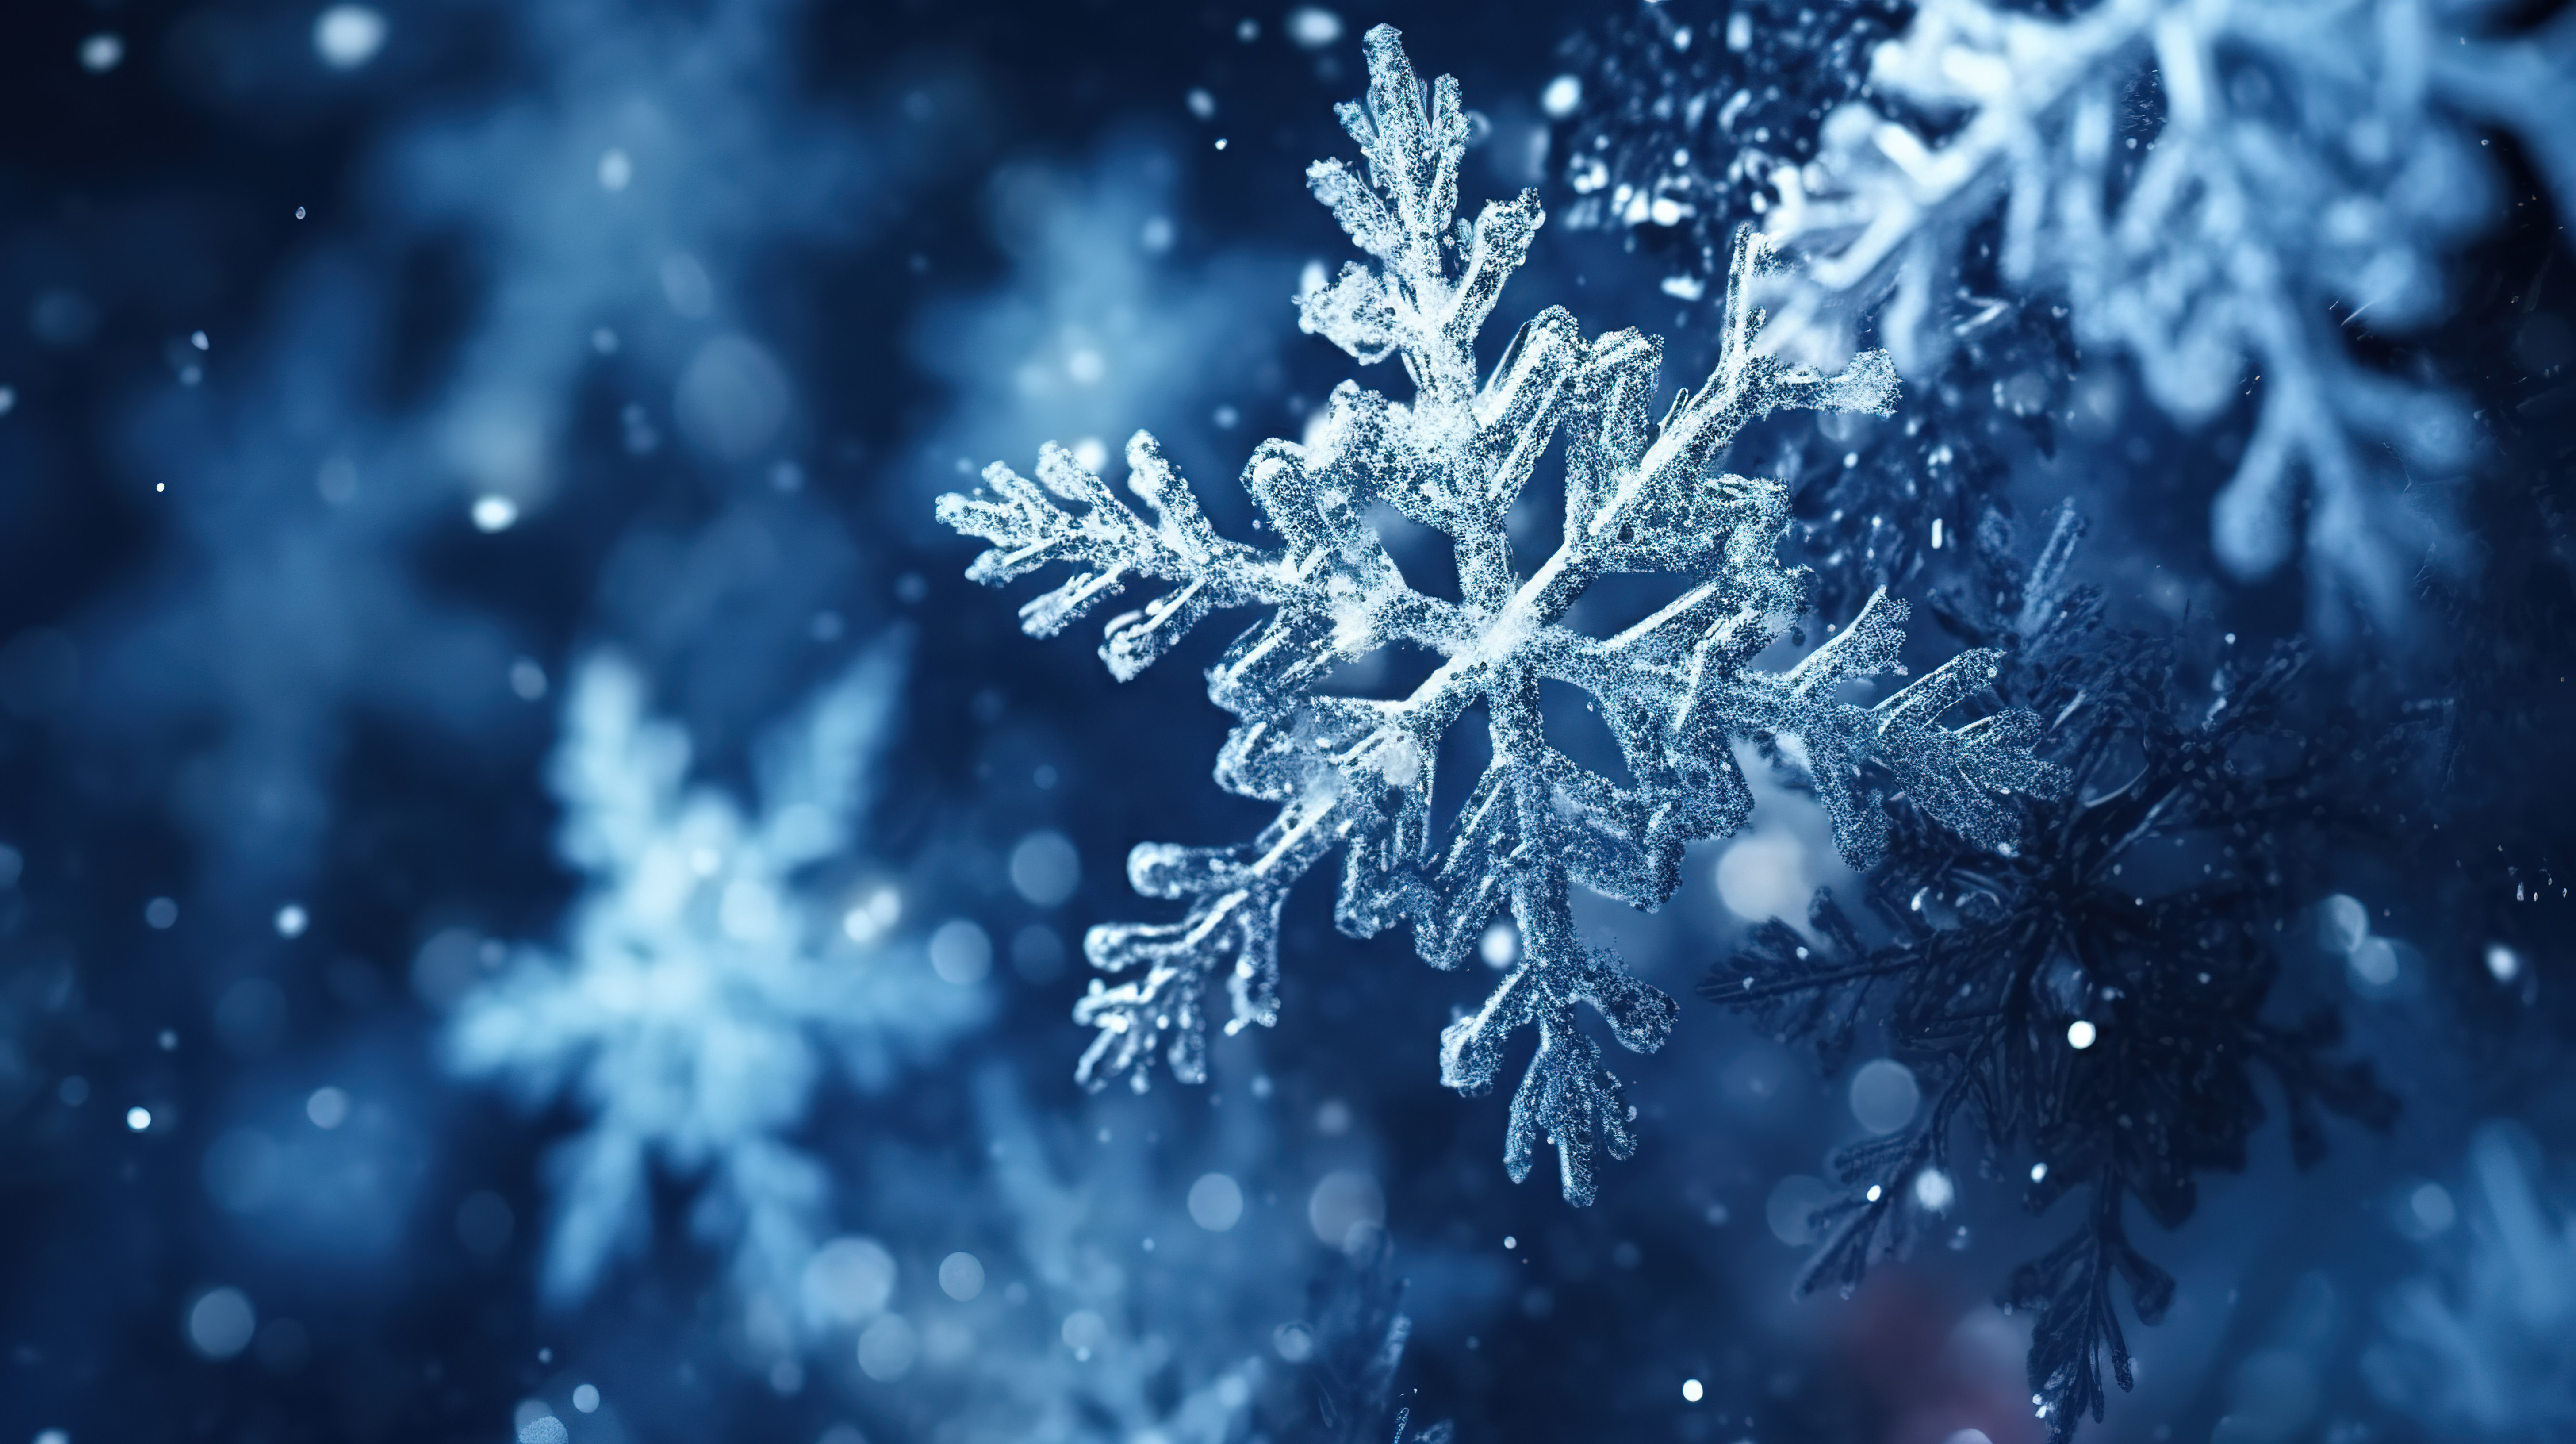 雪和雪花动态运动的详细视图以精致而华丽的 3D 电影插画风格呈现电影般的冬季背景图片